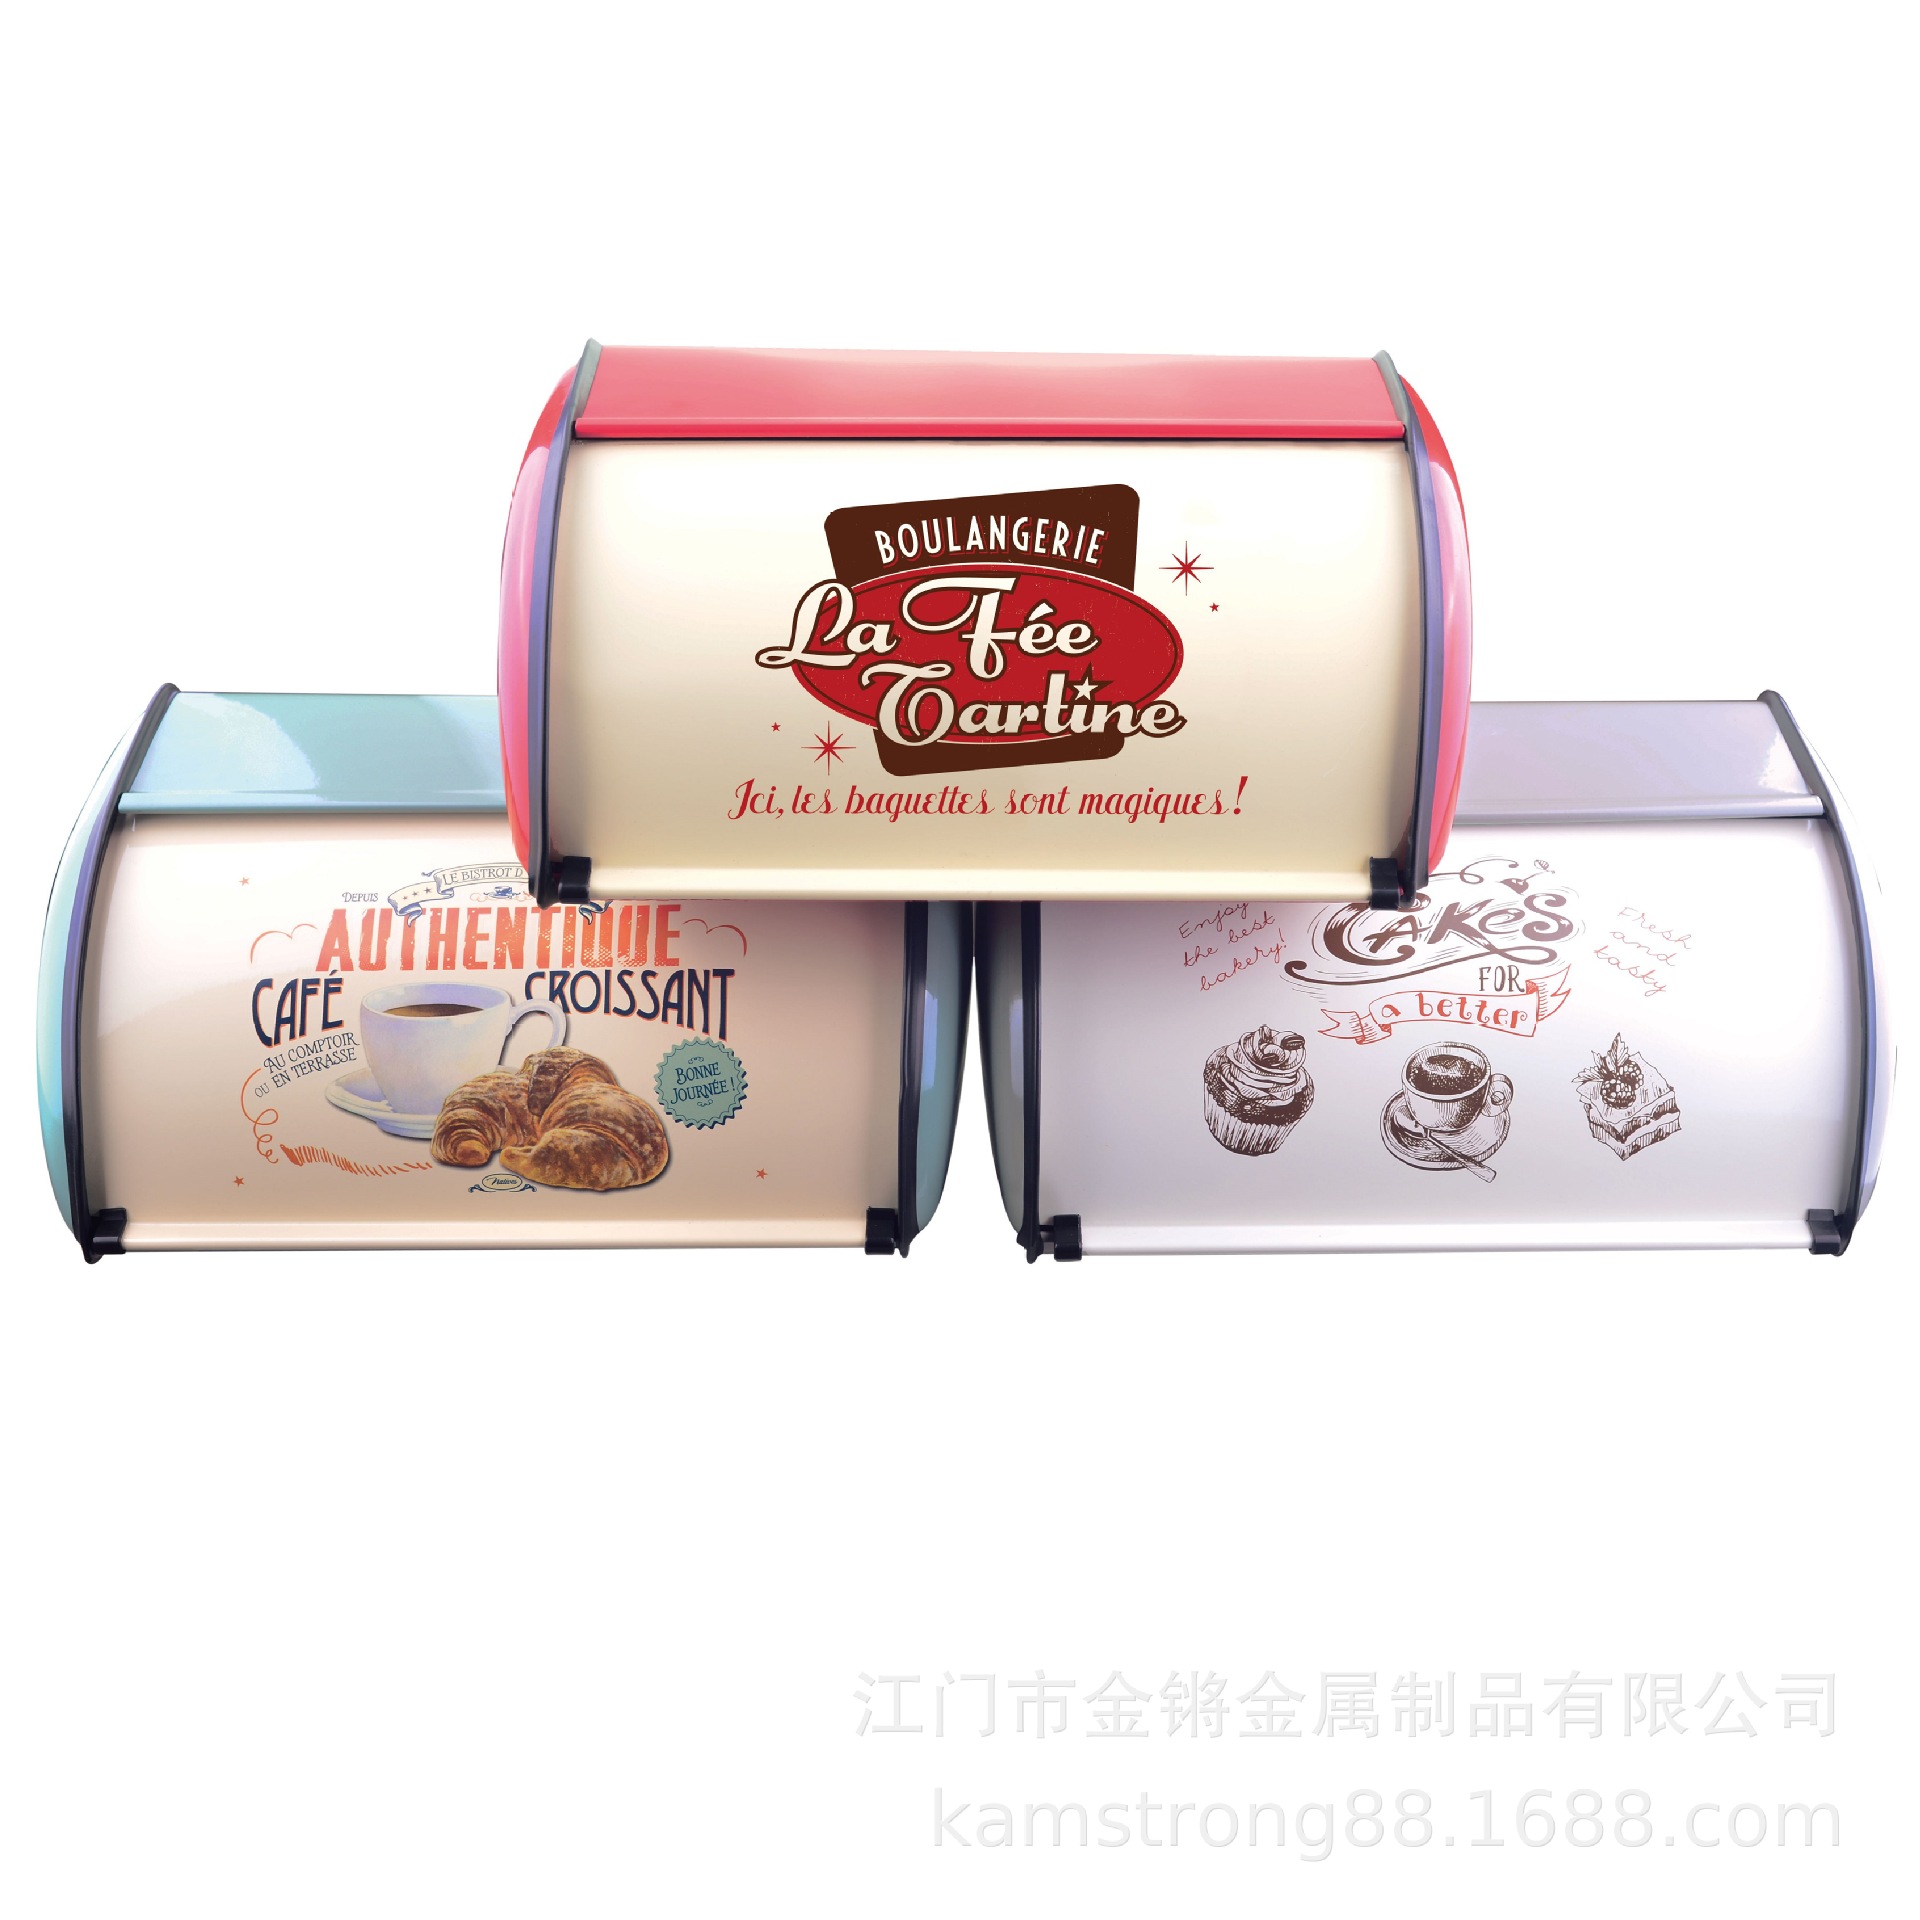 Amazon Kitchen Supplies Hot Metal Side Drum Bread Storage Box Jiangmen Kitchen Storage Jar Source